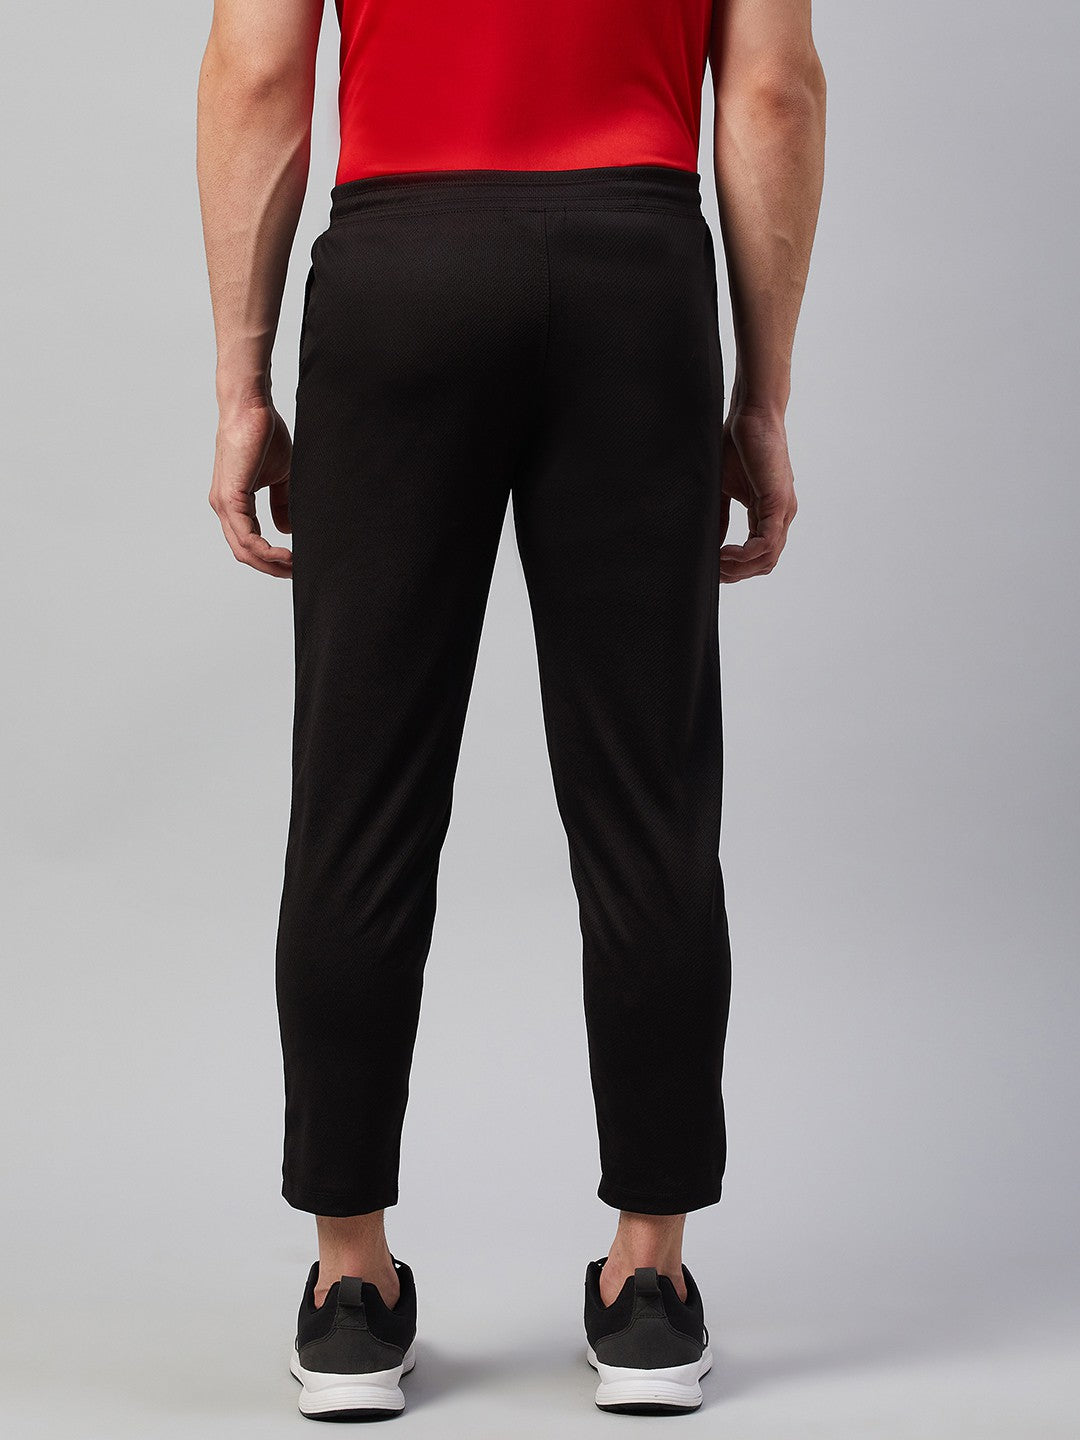 Men Printed Grey/Black Night Track Pants (Pack of 2)